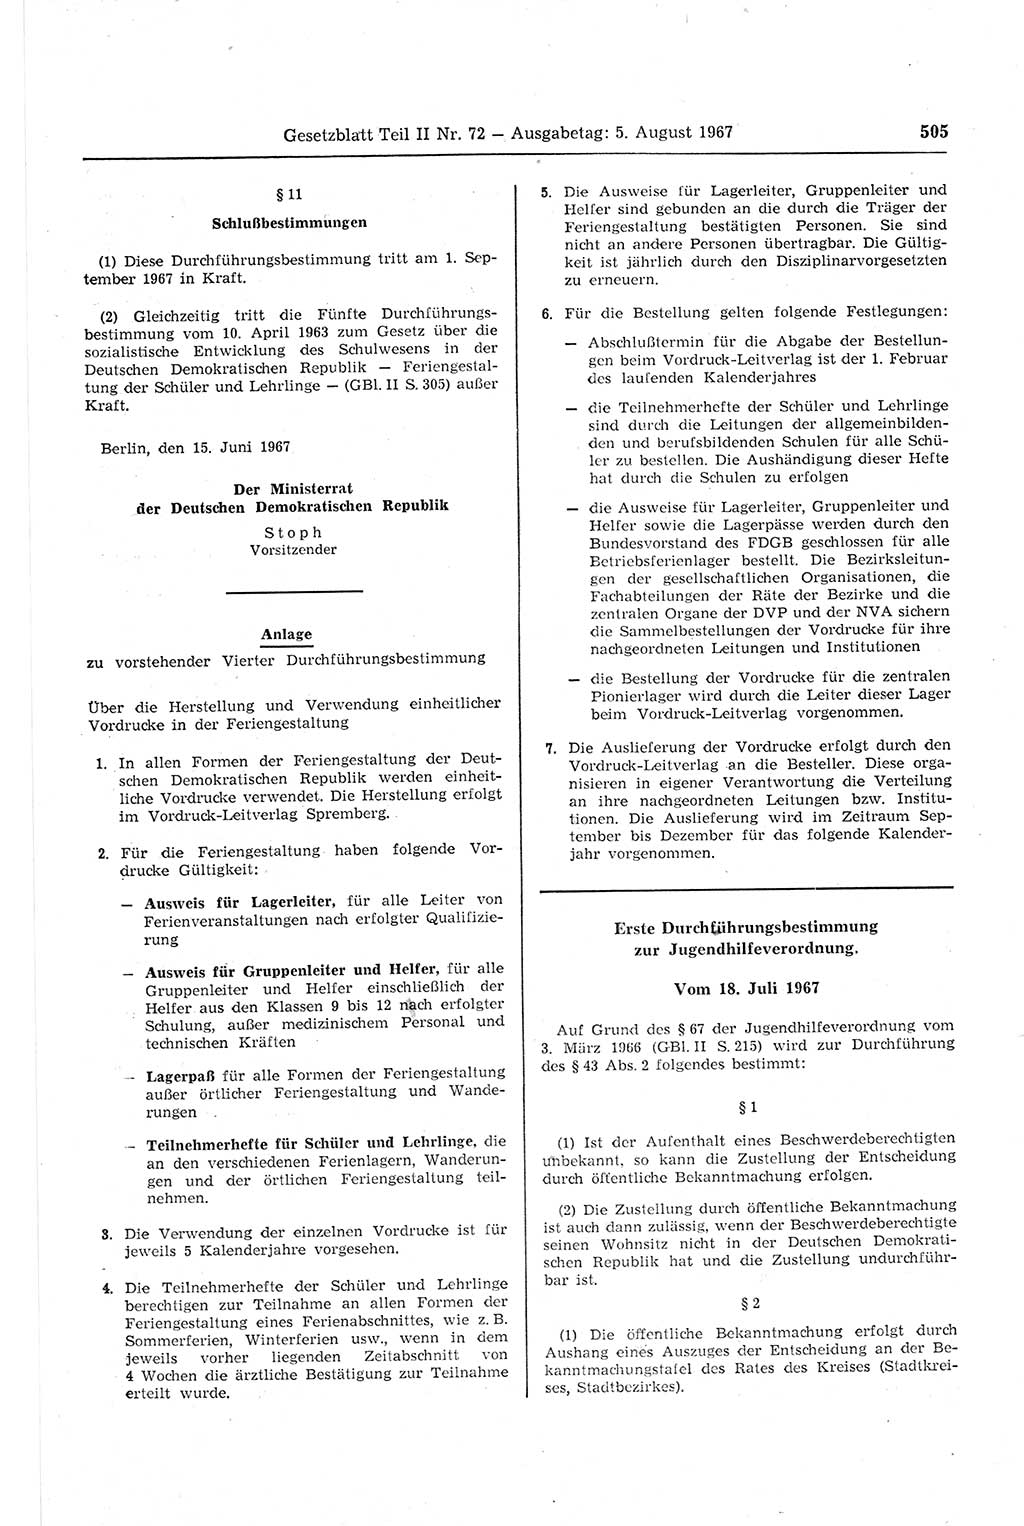 Gesetzblatt (GBl.) der Deutschen Demokratischen Republik (DDR) Teil ⅠⅠ 1967, Seite 505 (GBl. DDR ⅠⅠ 1967, S. 505)